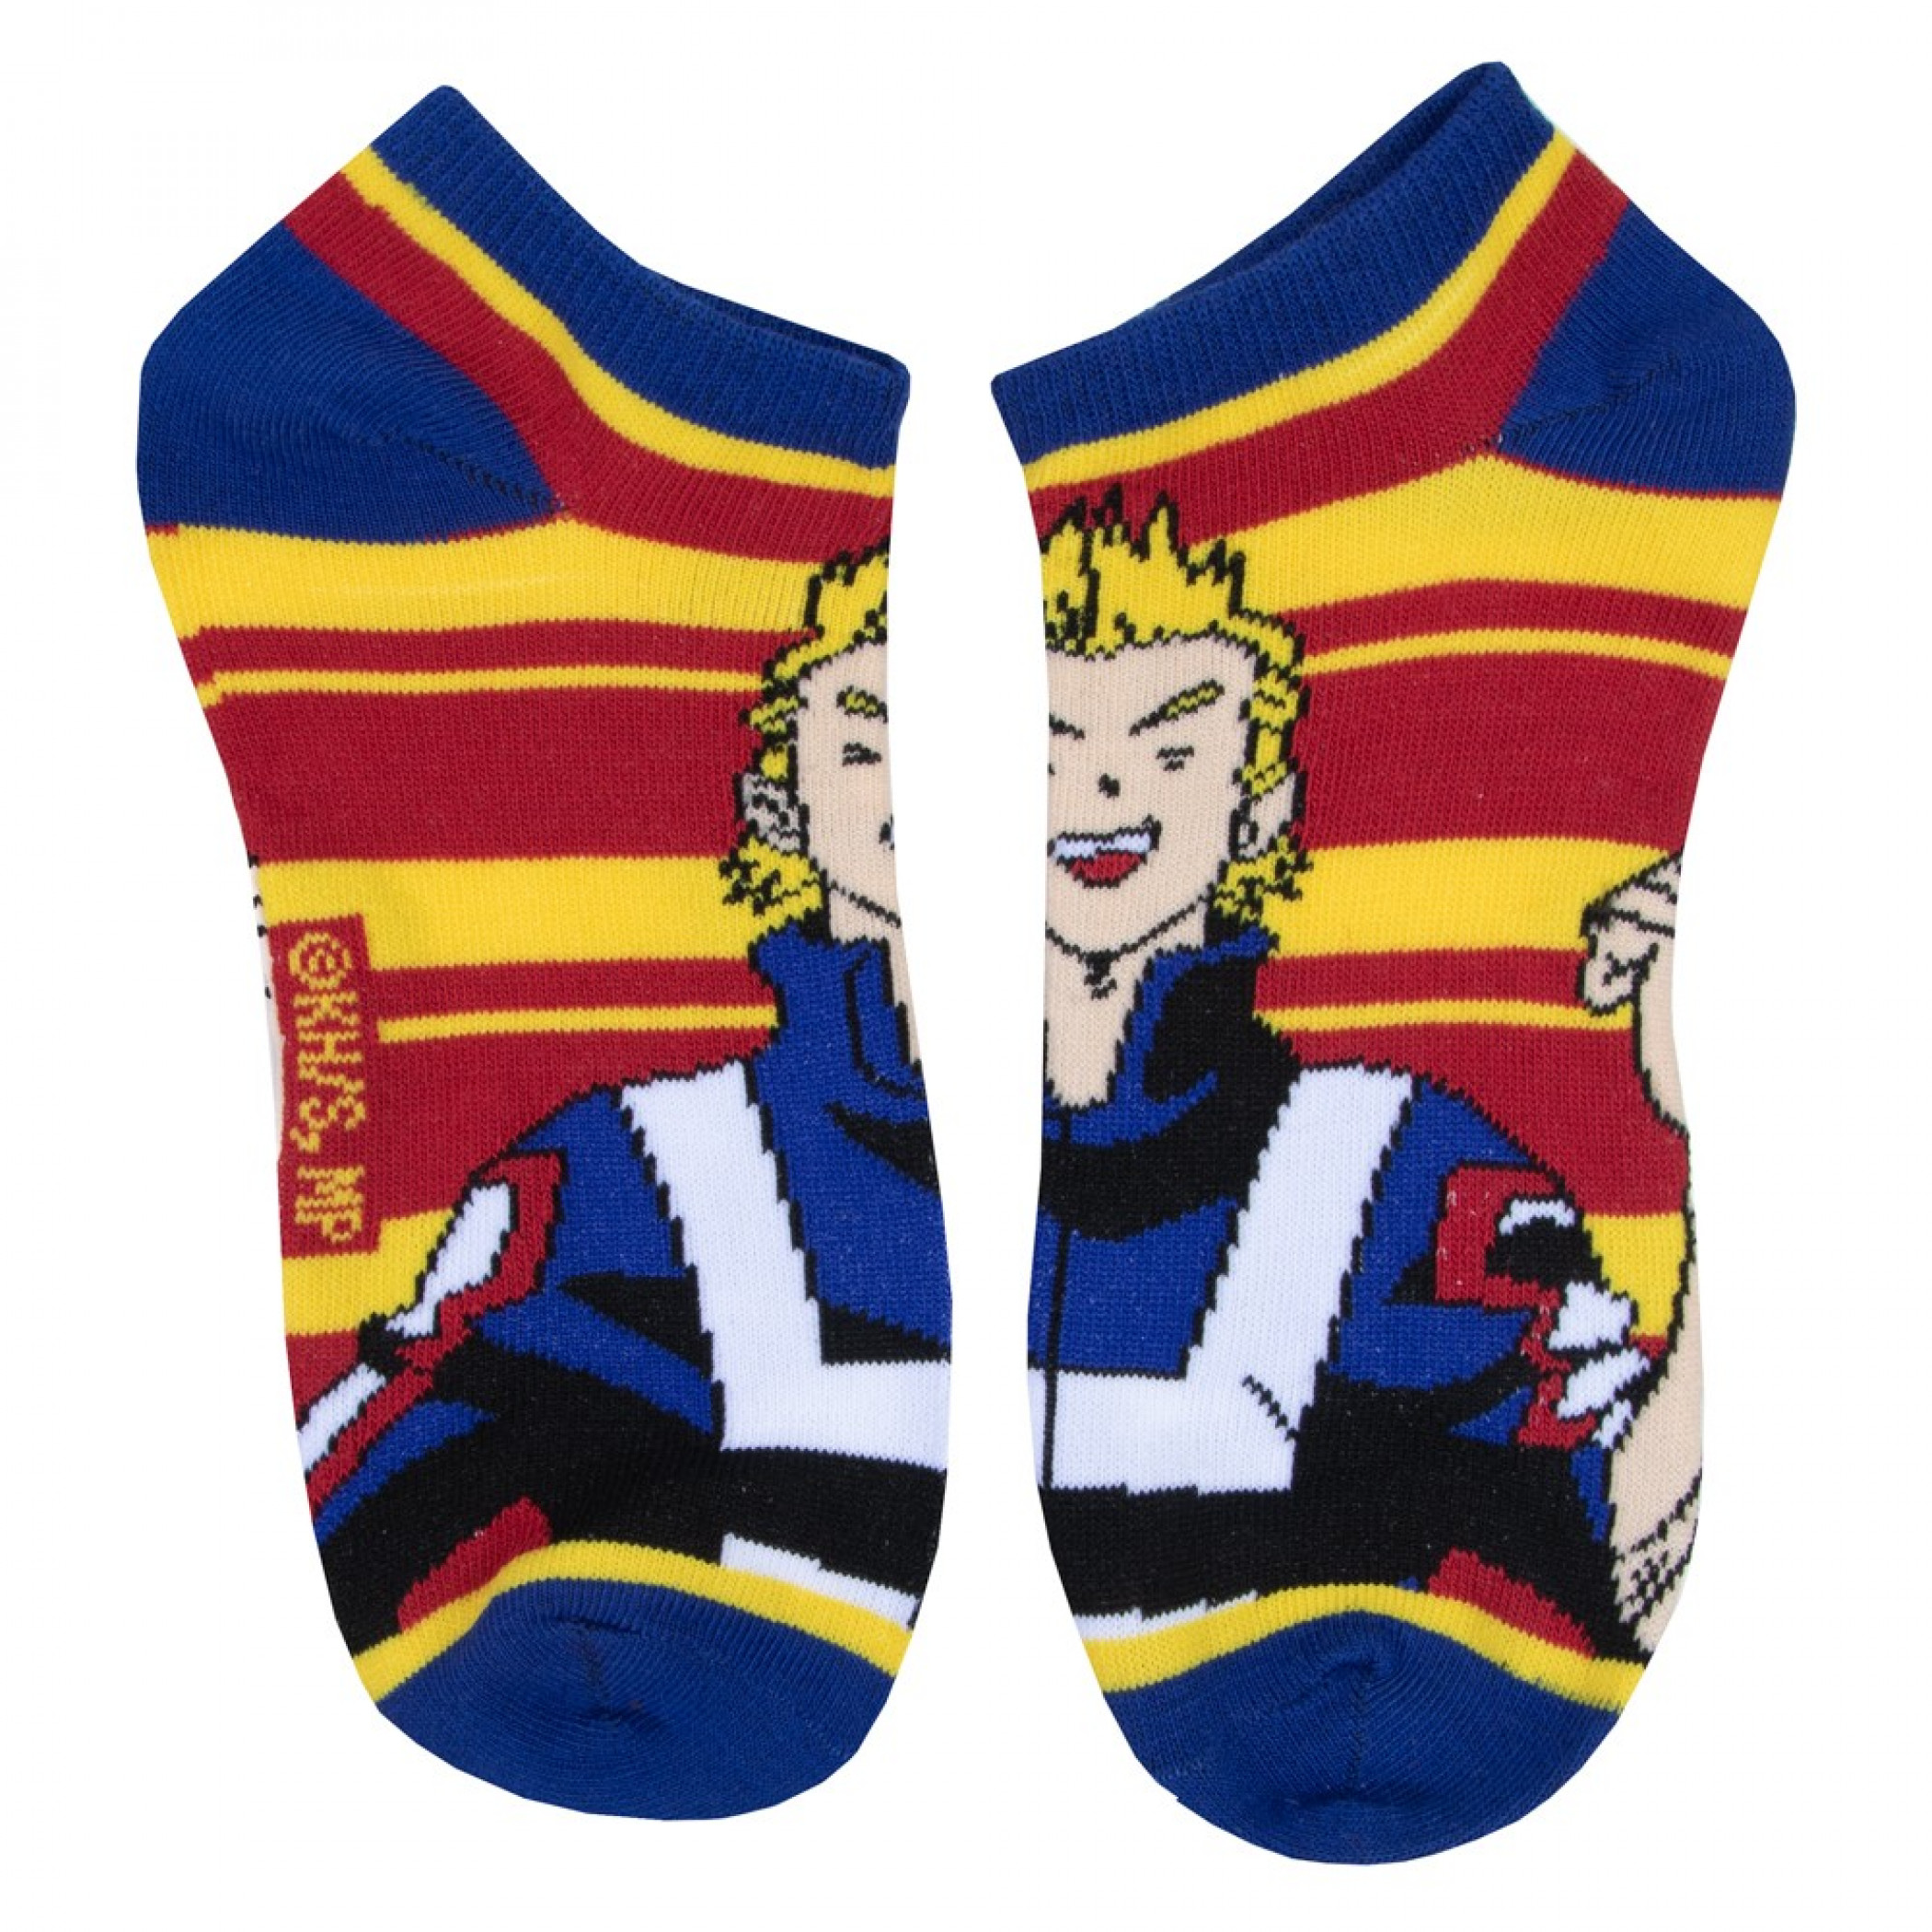 My Hero Academia 5-Pair Pack Ankle Socks